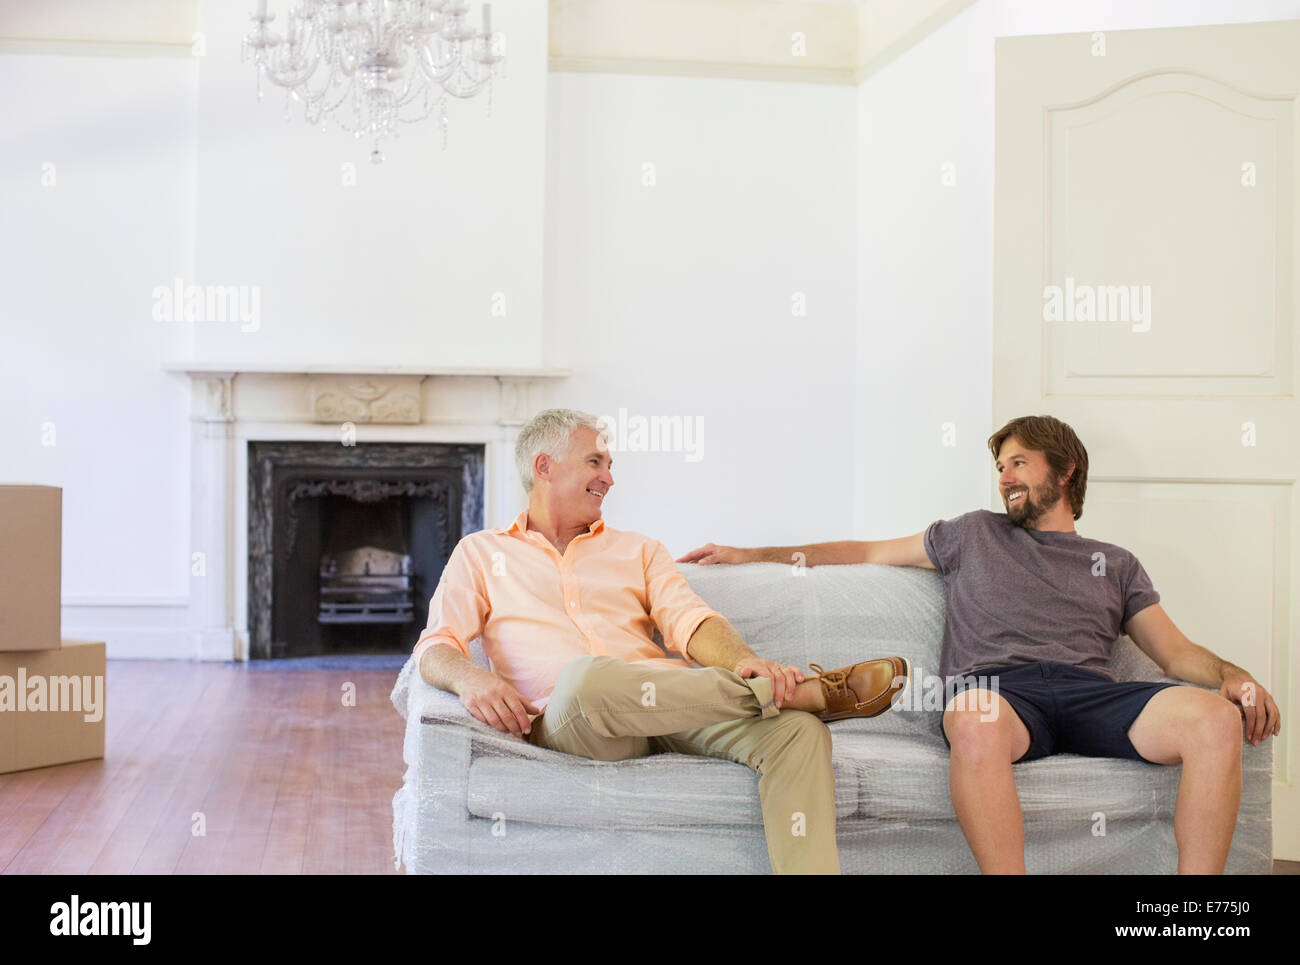 Padre e figlio seduti sul divano in spazio abitativo Foto Stock